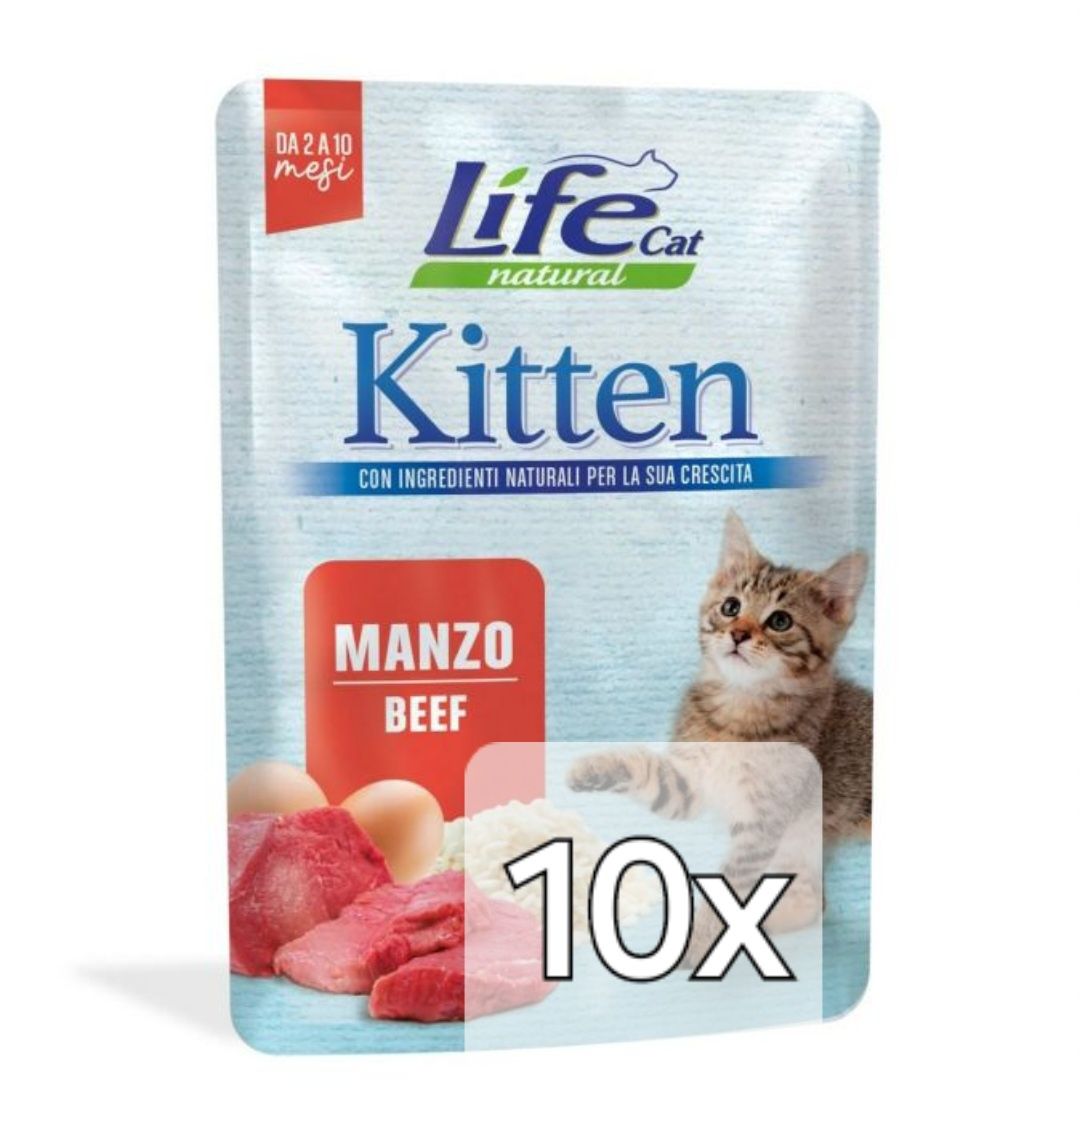 Life Cat Kitten 10x 70g + Gratis, Saszetki Beef Wołowina Kocięta Kot